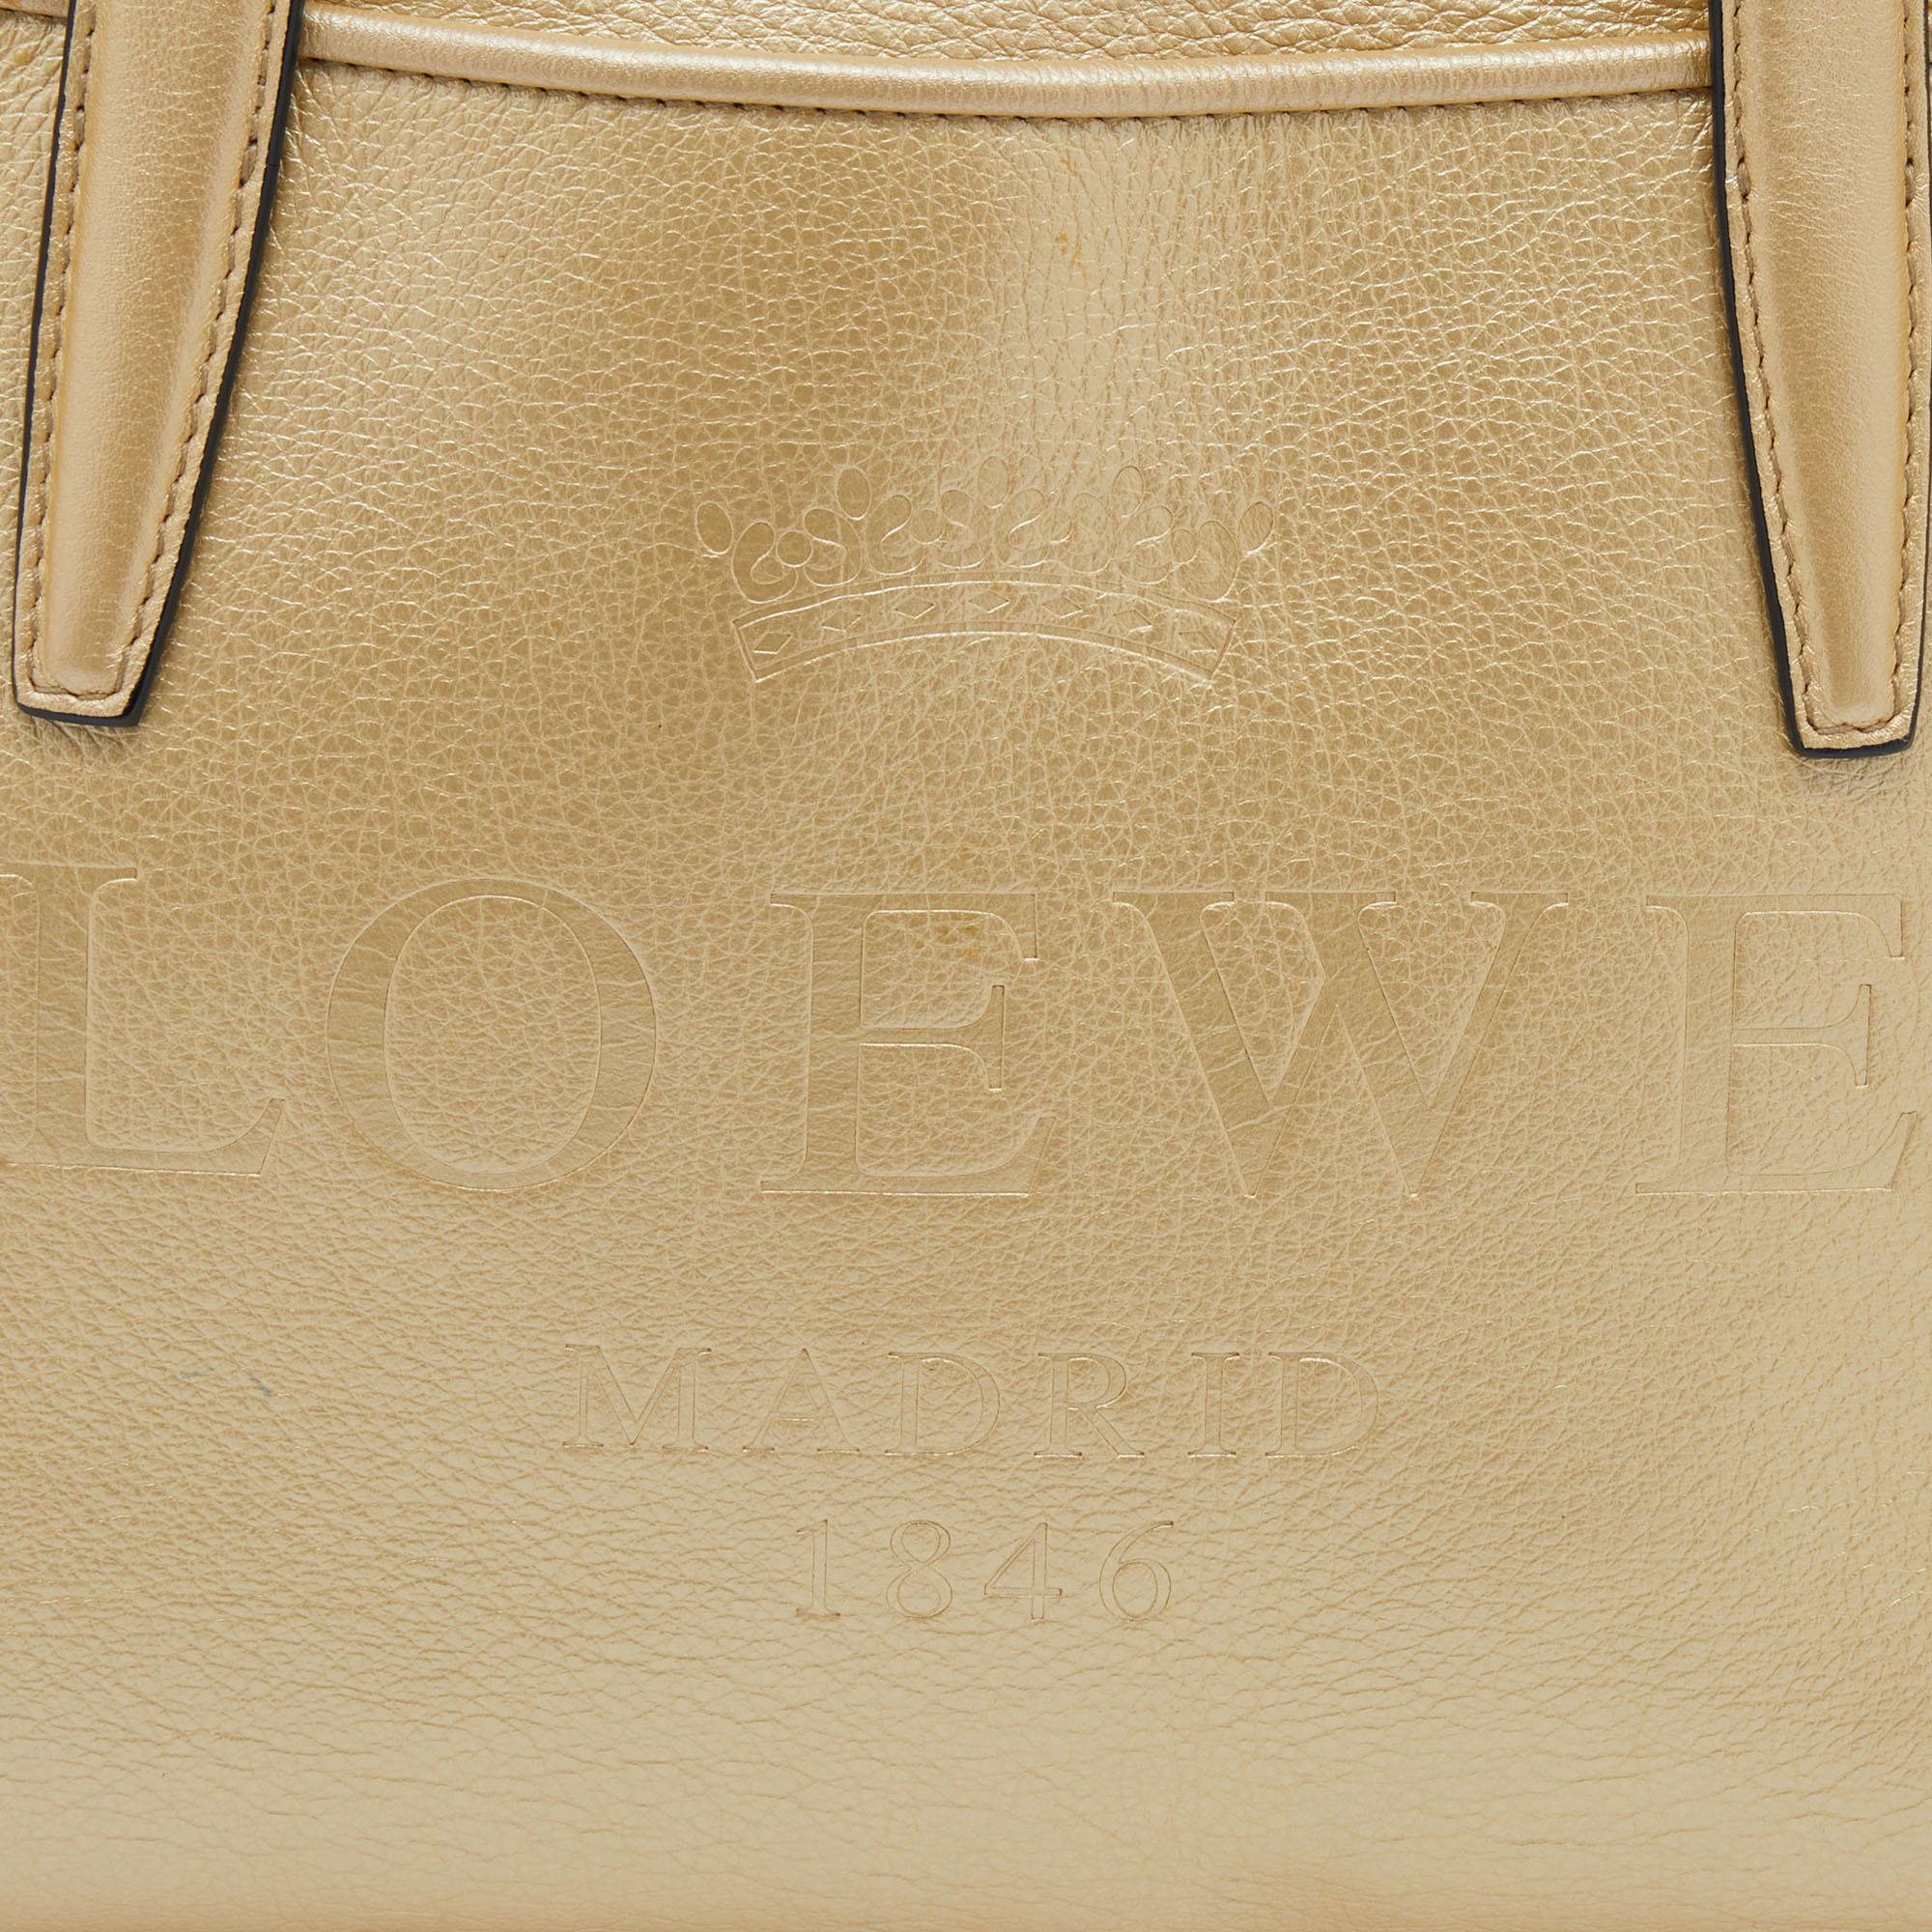 Loewe Metallic Gold Leather Satchel 6